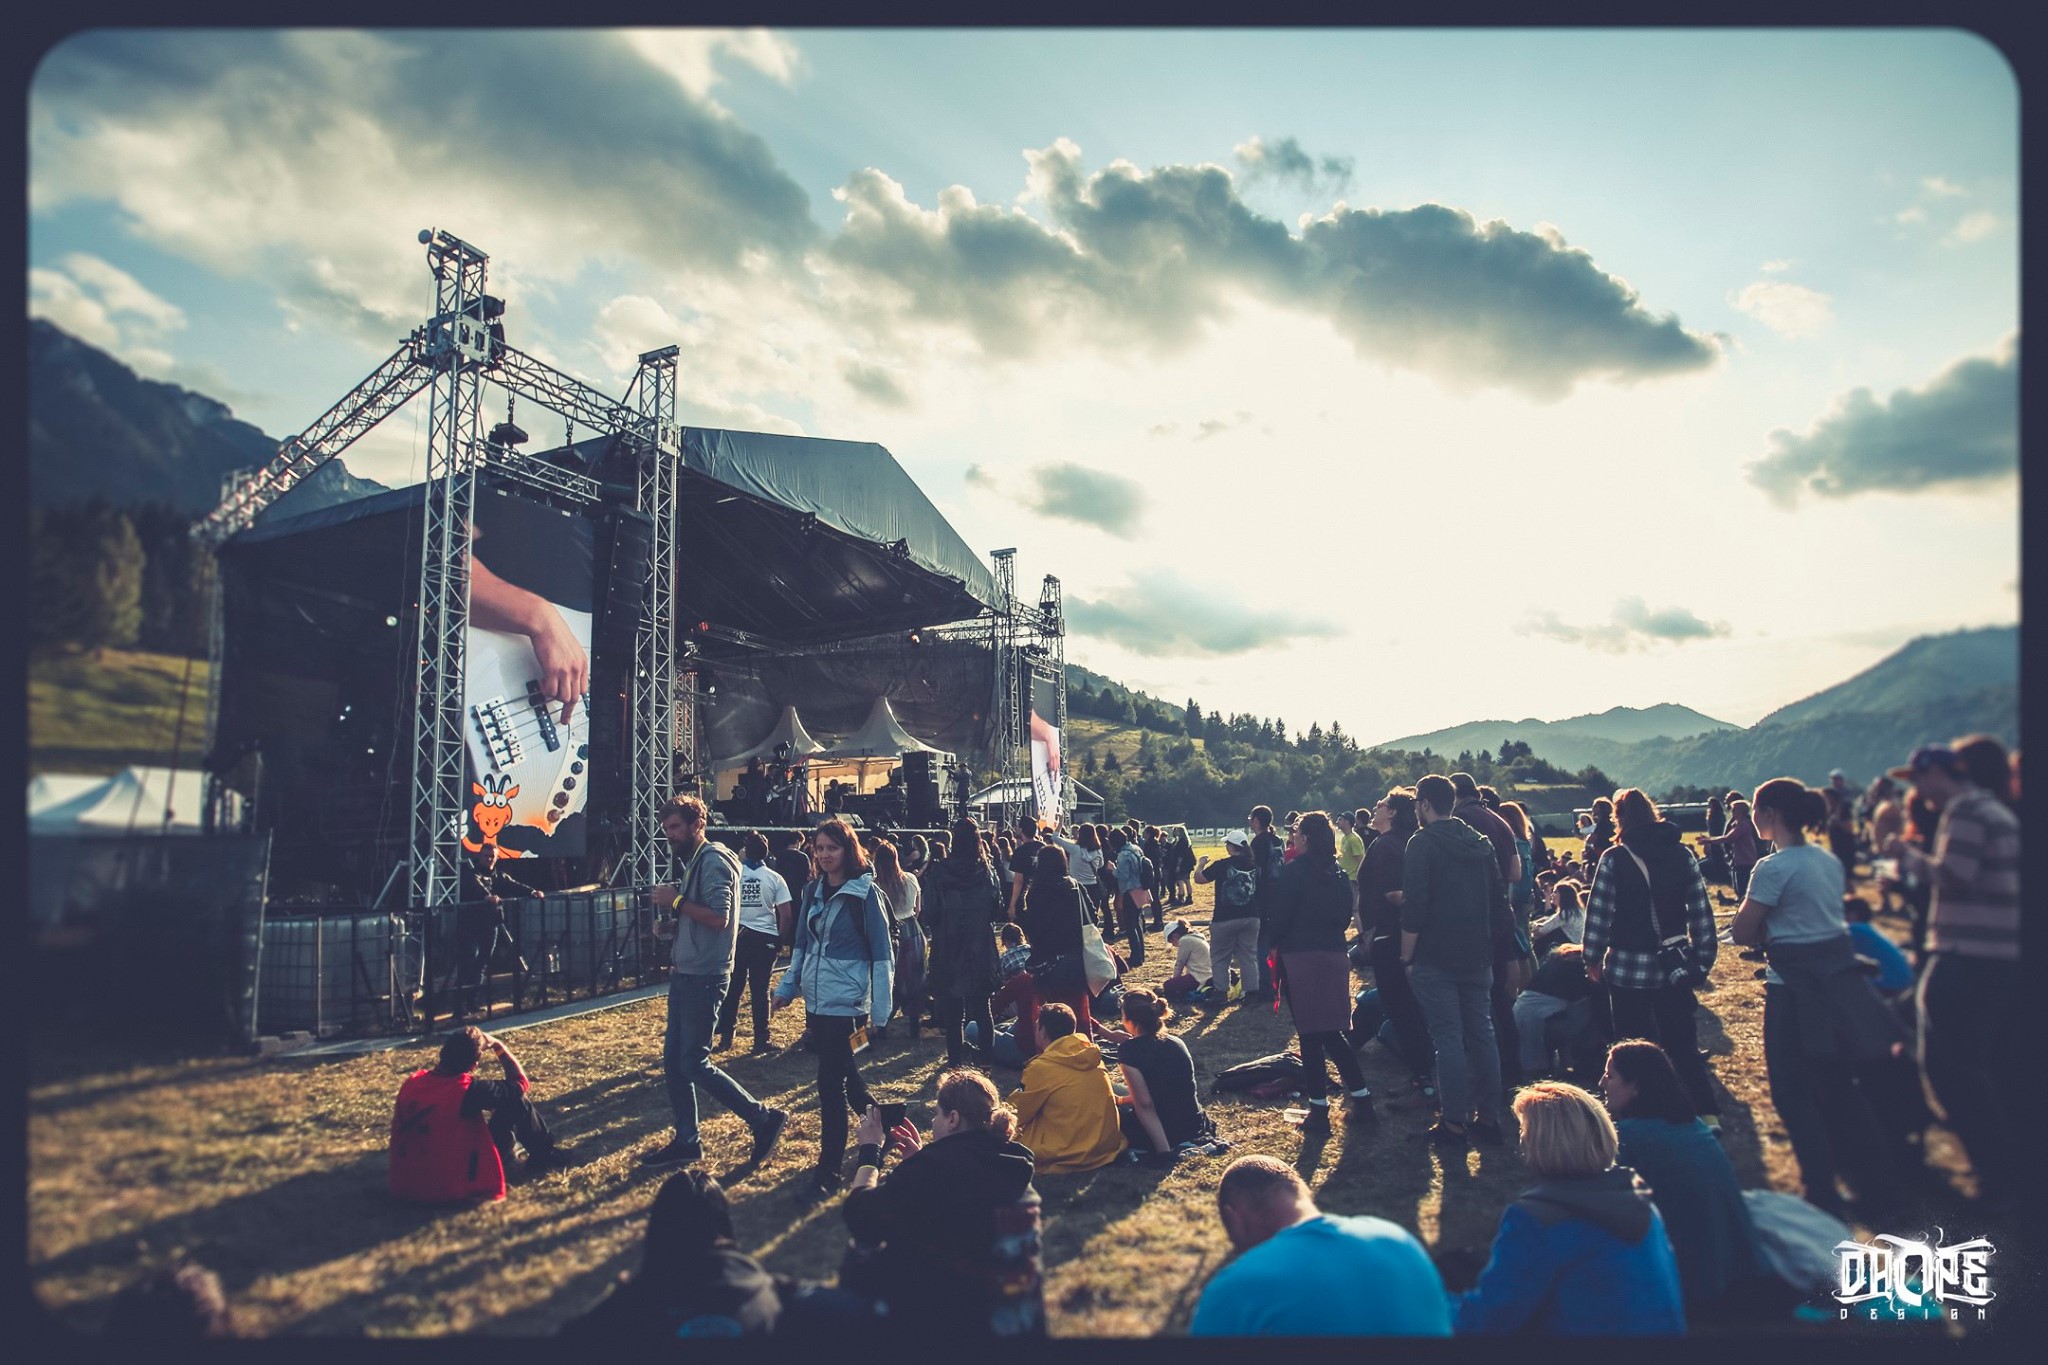 Folk Rock Festival Piatra Craiului Folk Rock Fest 2019 @ Piatra Craiului (22)setup Sunet Scena Lumini Video Music Gear